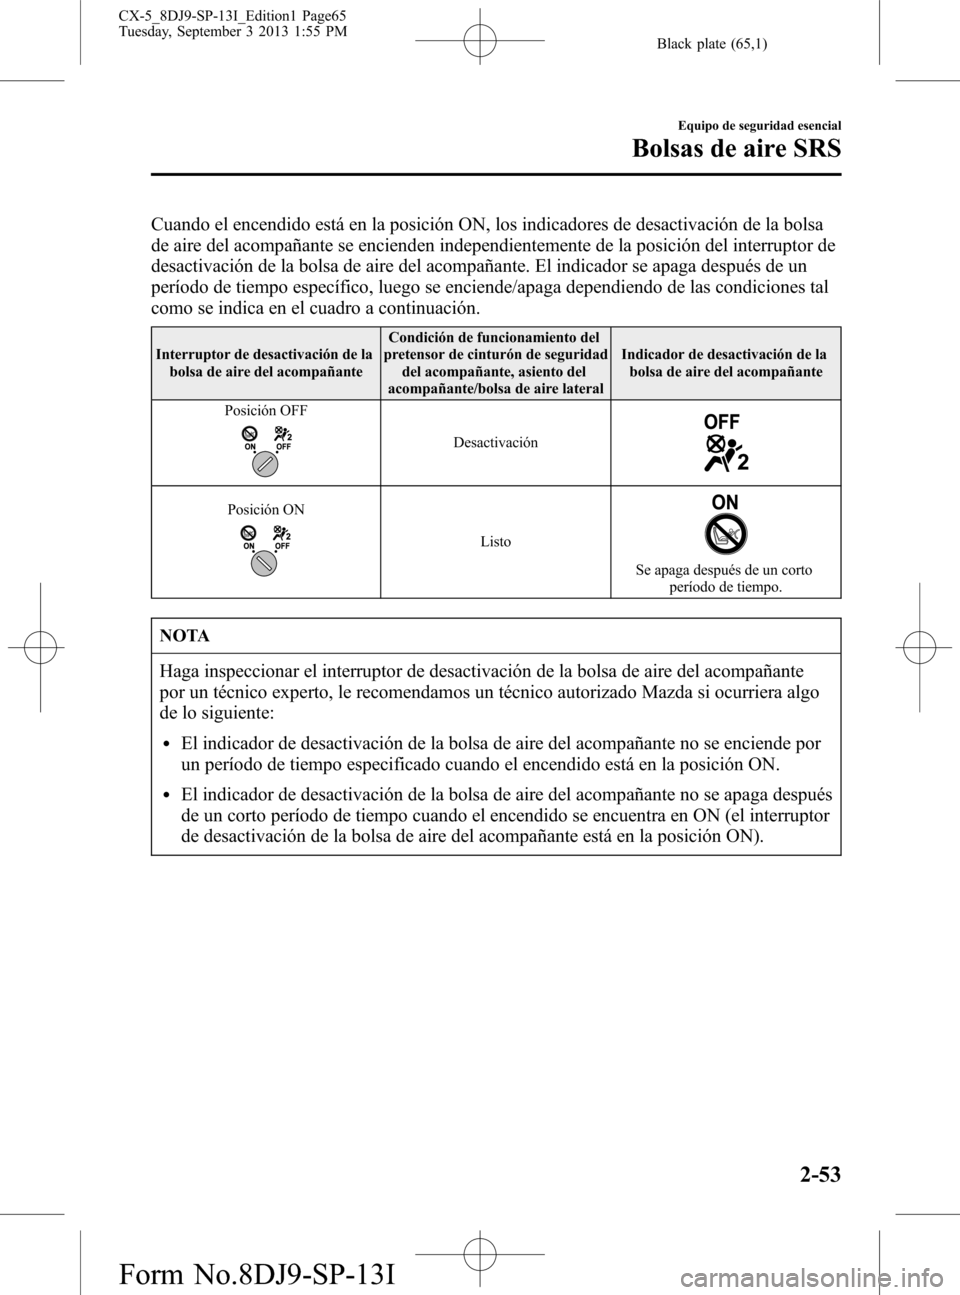 MAZDA MODEL CX-5 2014  Manual del propietario (in Spanish) Black plate (65,1)
Cuando el encendido está en la posición ON, los indicadores de desactivación de la bolsa
de aire del acompañante se encienden independientemente de la posición del interruptor 